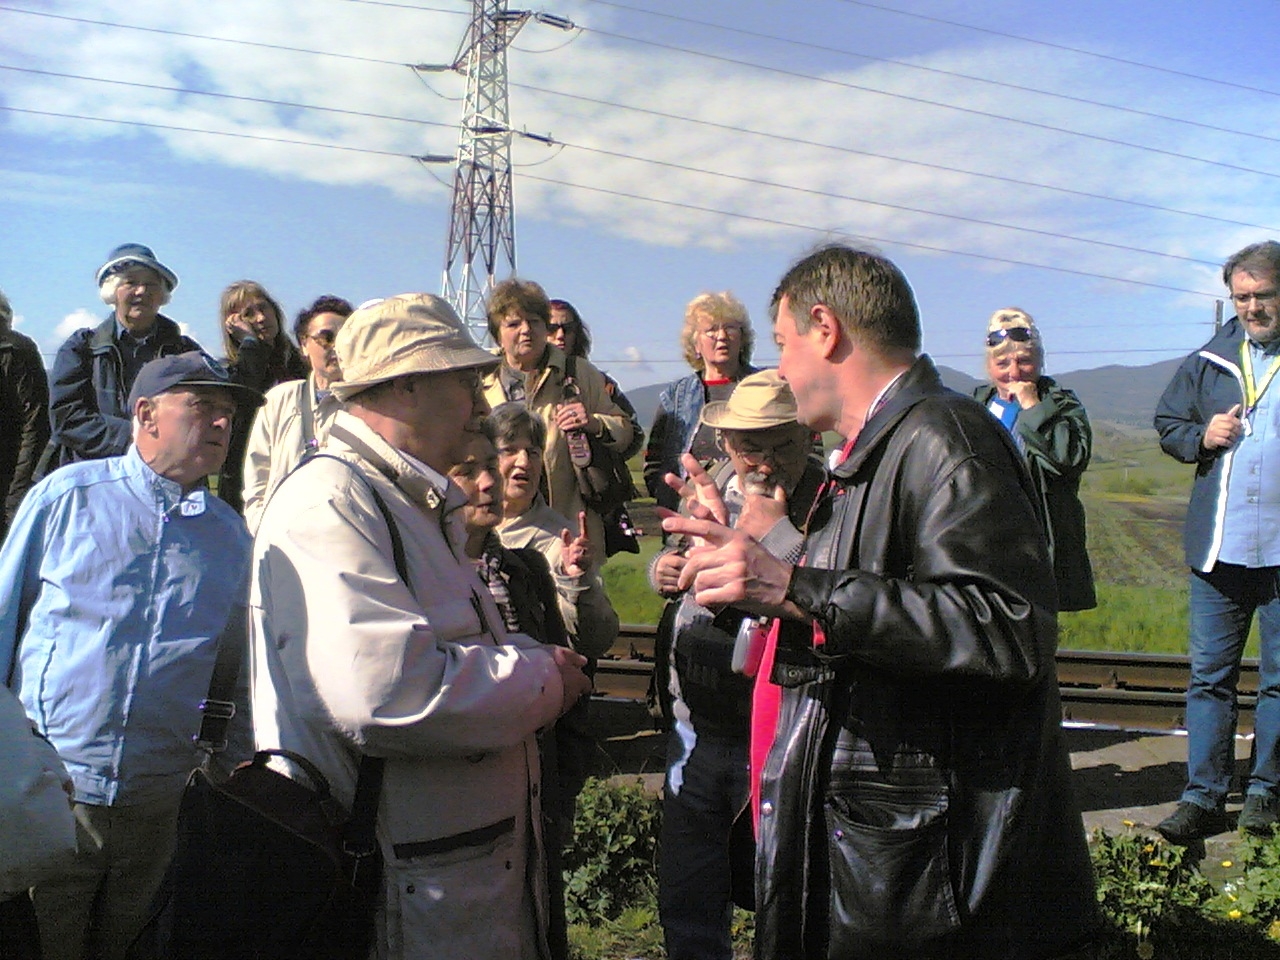 Eligazítás. Mező Tibor, a Kárpáteurópa ügyvezetője tájékoztatja a vonatra váró zarándokokat a várható fejleményekről (fotó: Vígh Sándor)